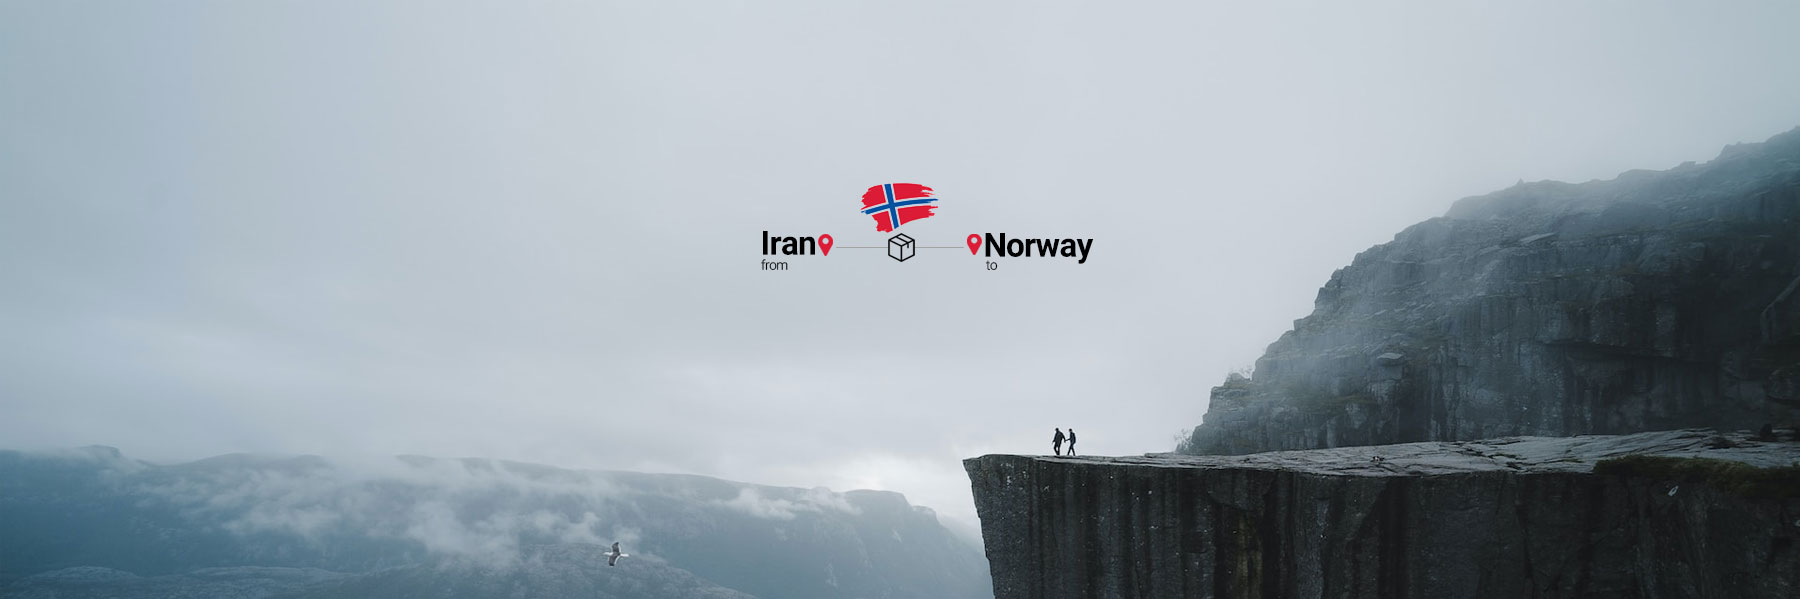 ارسال بار به نروژ